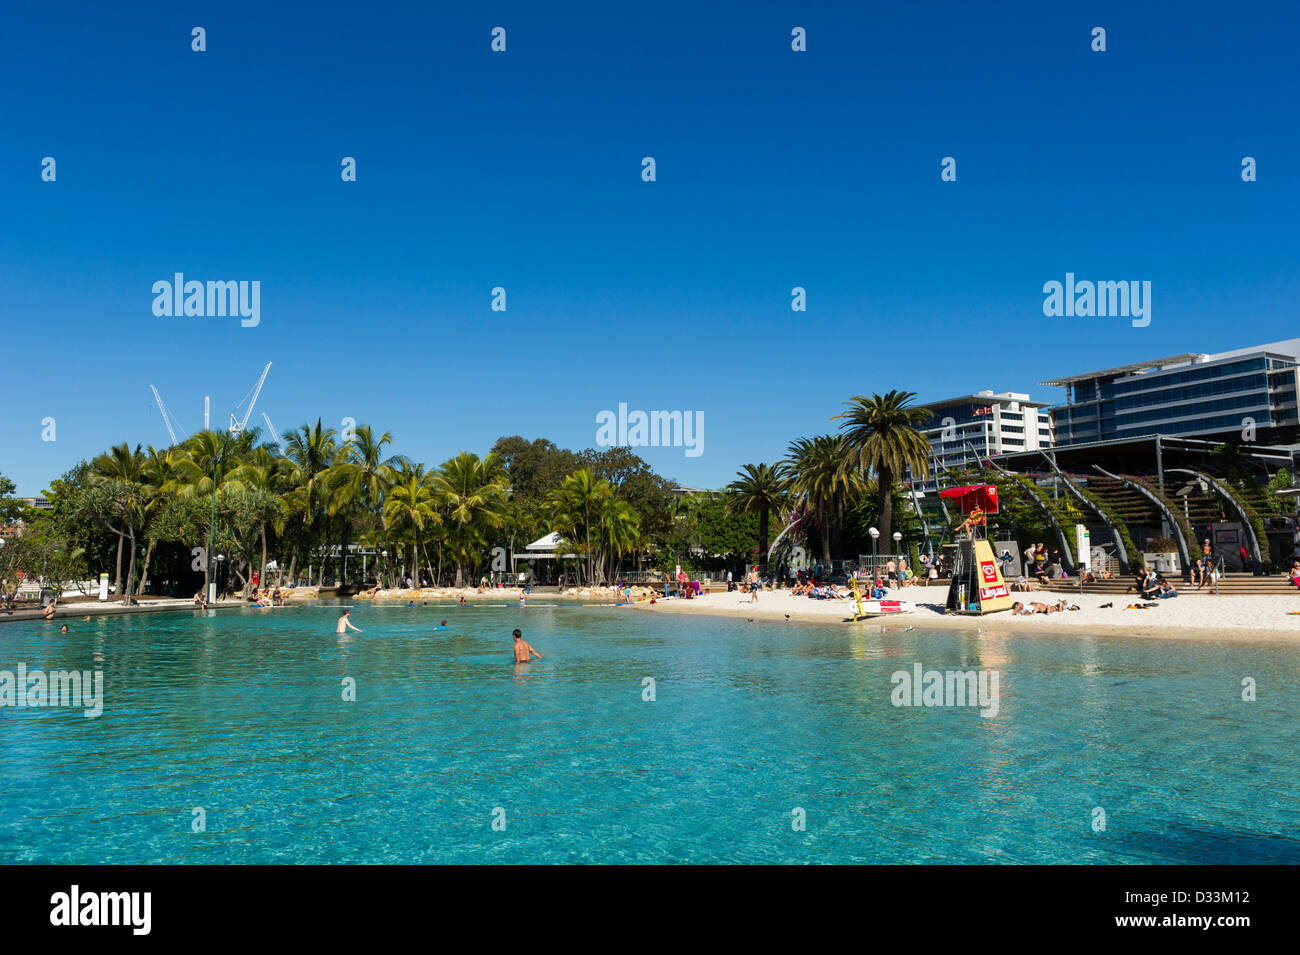 Rue Beach, South Bank Parc dans le milieu du centre-ville de Brisbane, Queensland, Australie - plage artificielle Banque D'Images